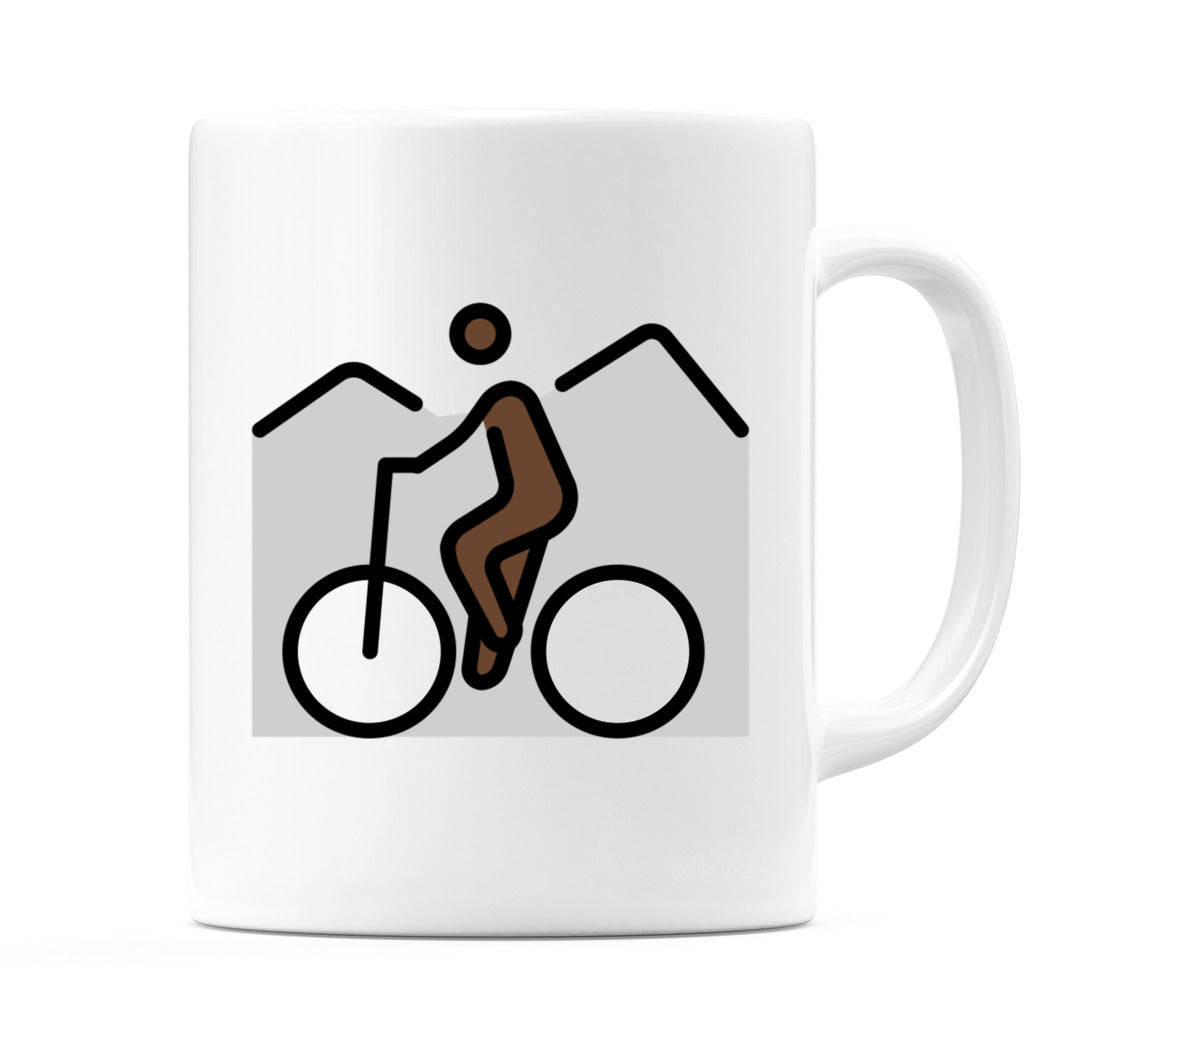 Person Mountain Biking: Dark Skin Tone Emoji Mug